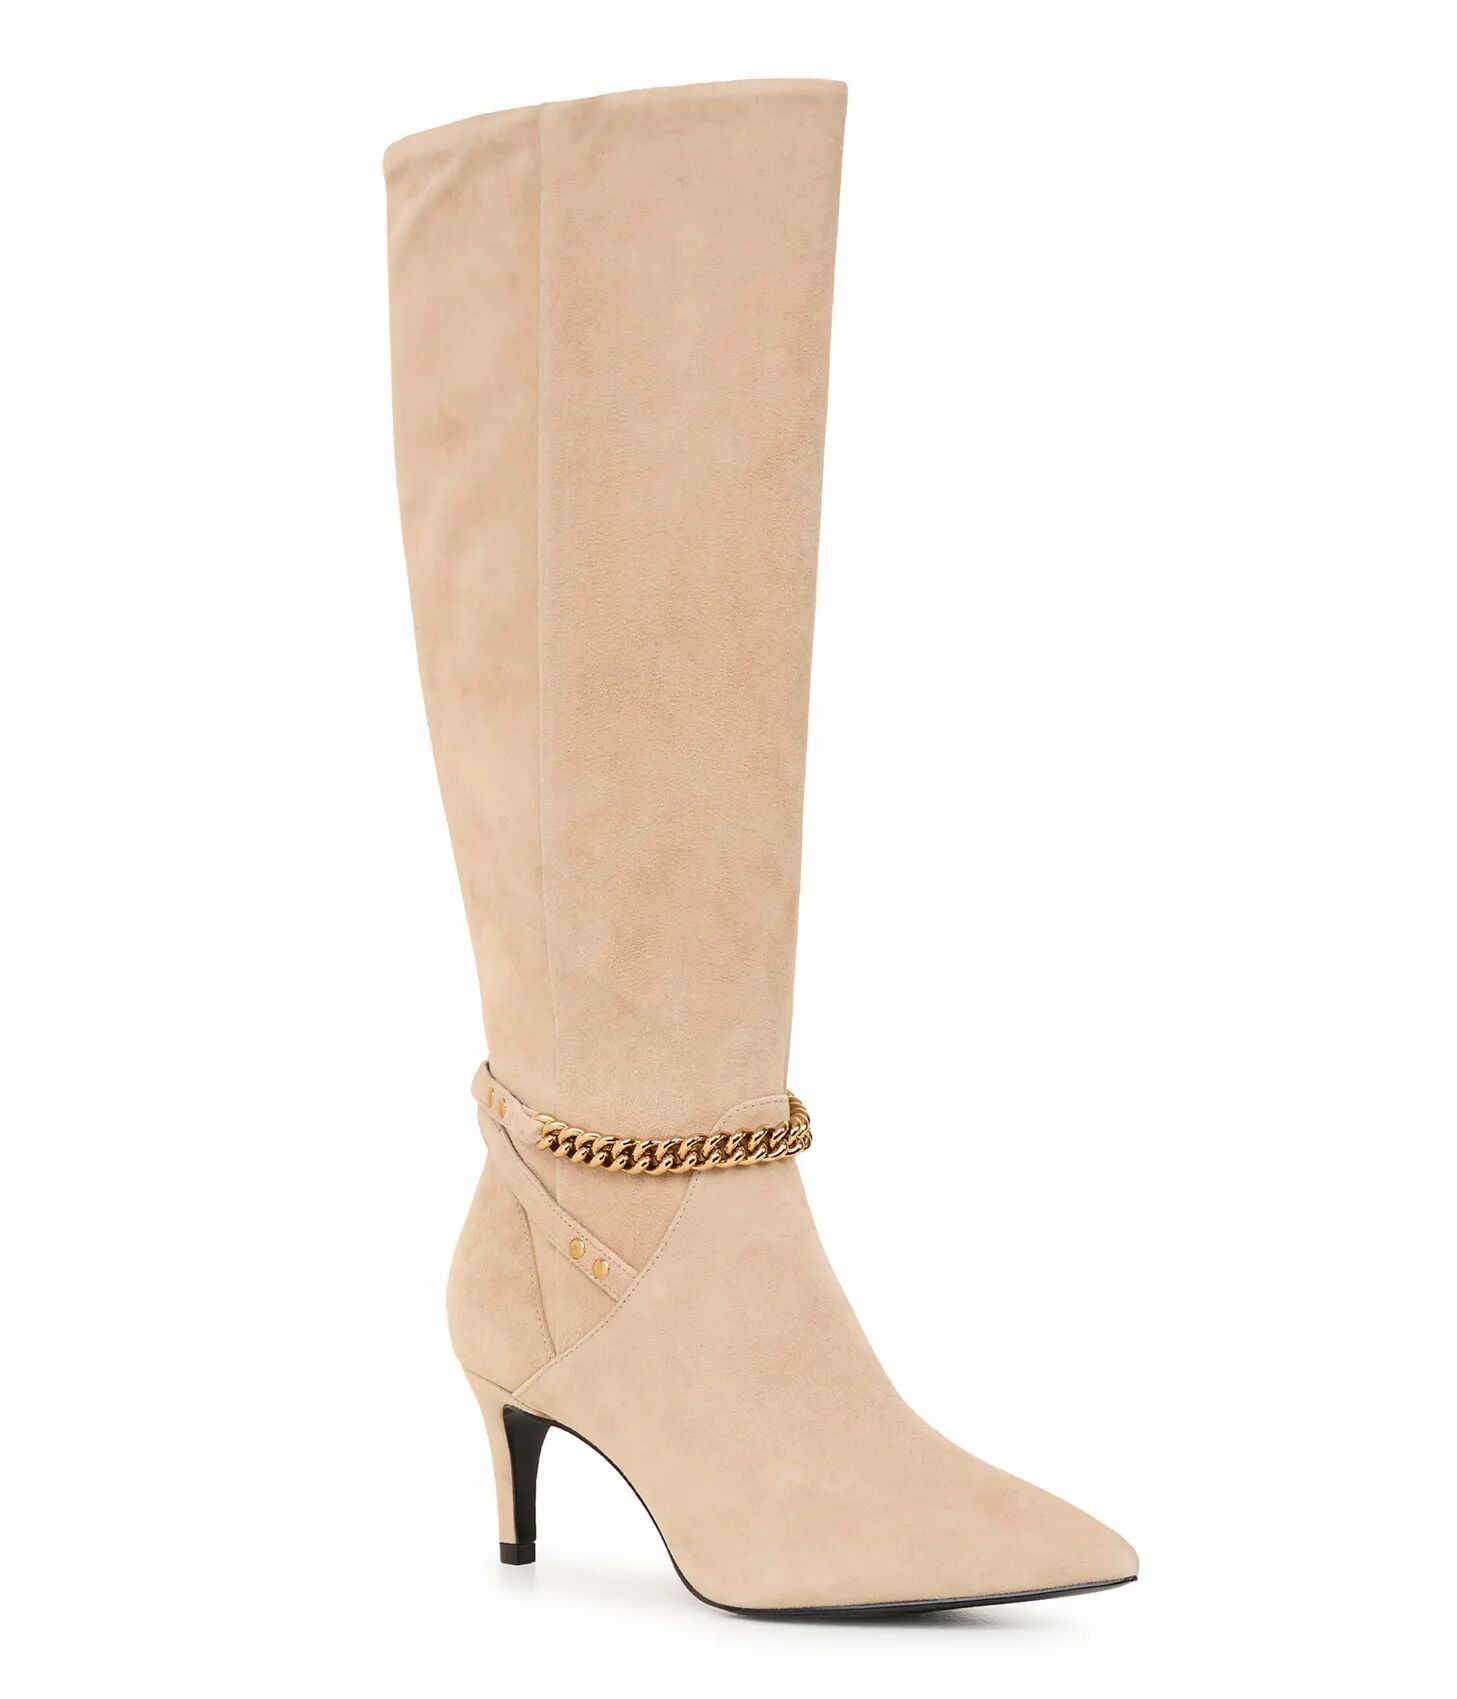 Karl Lagerfeld Paris   Women's Lisette Heeled Boot   Desert Beige  - Desert - Size: 7.5